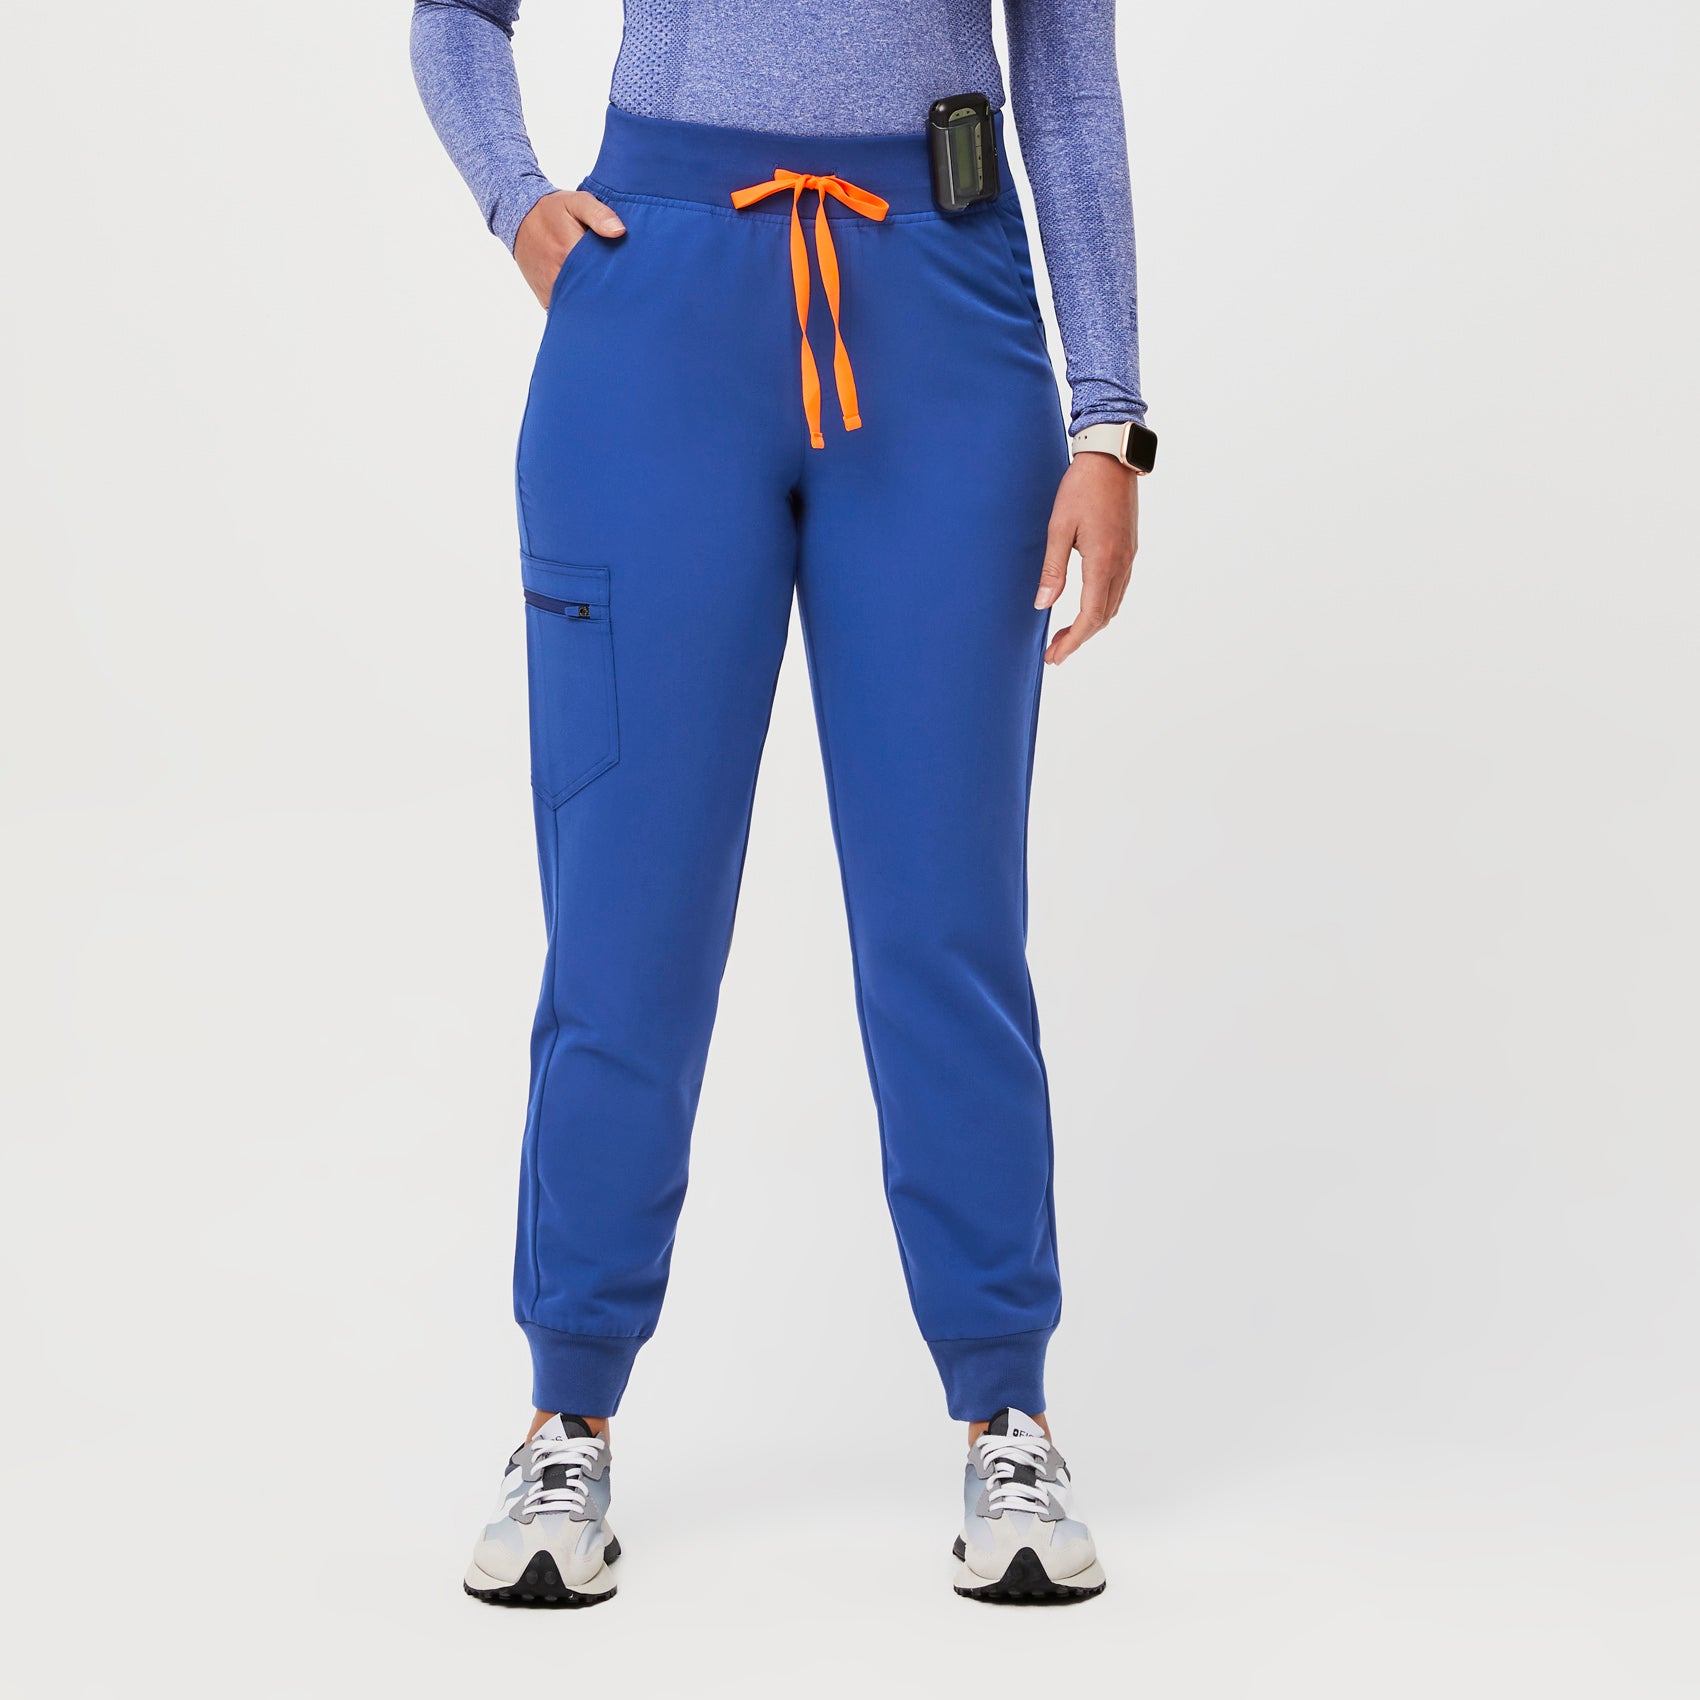 Women’s High Waisted Zamora™ Jogger Scrub Pants - Winning Blue · FIGS